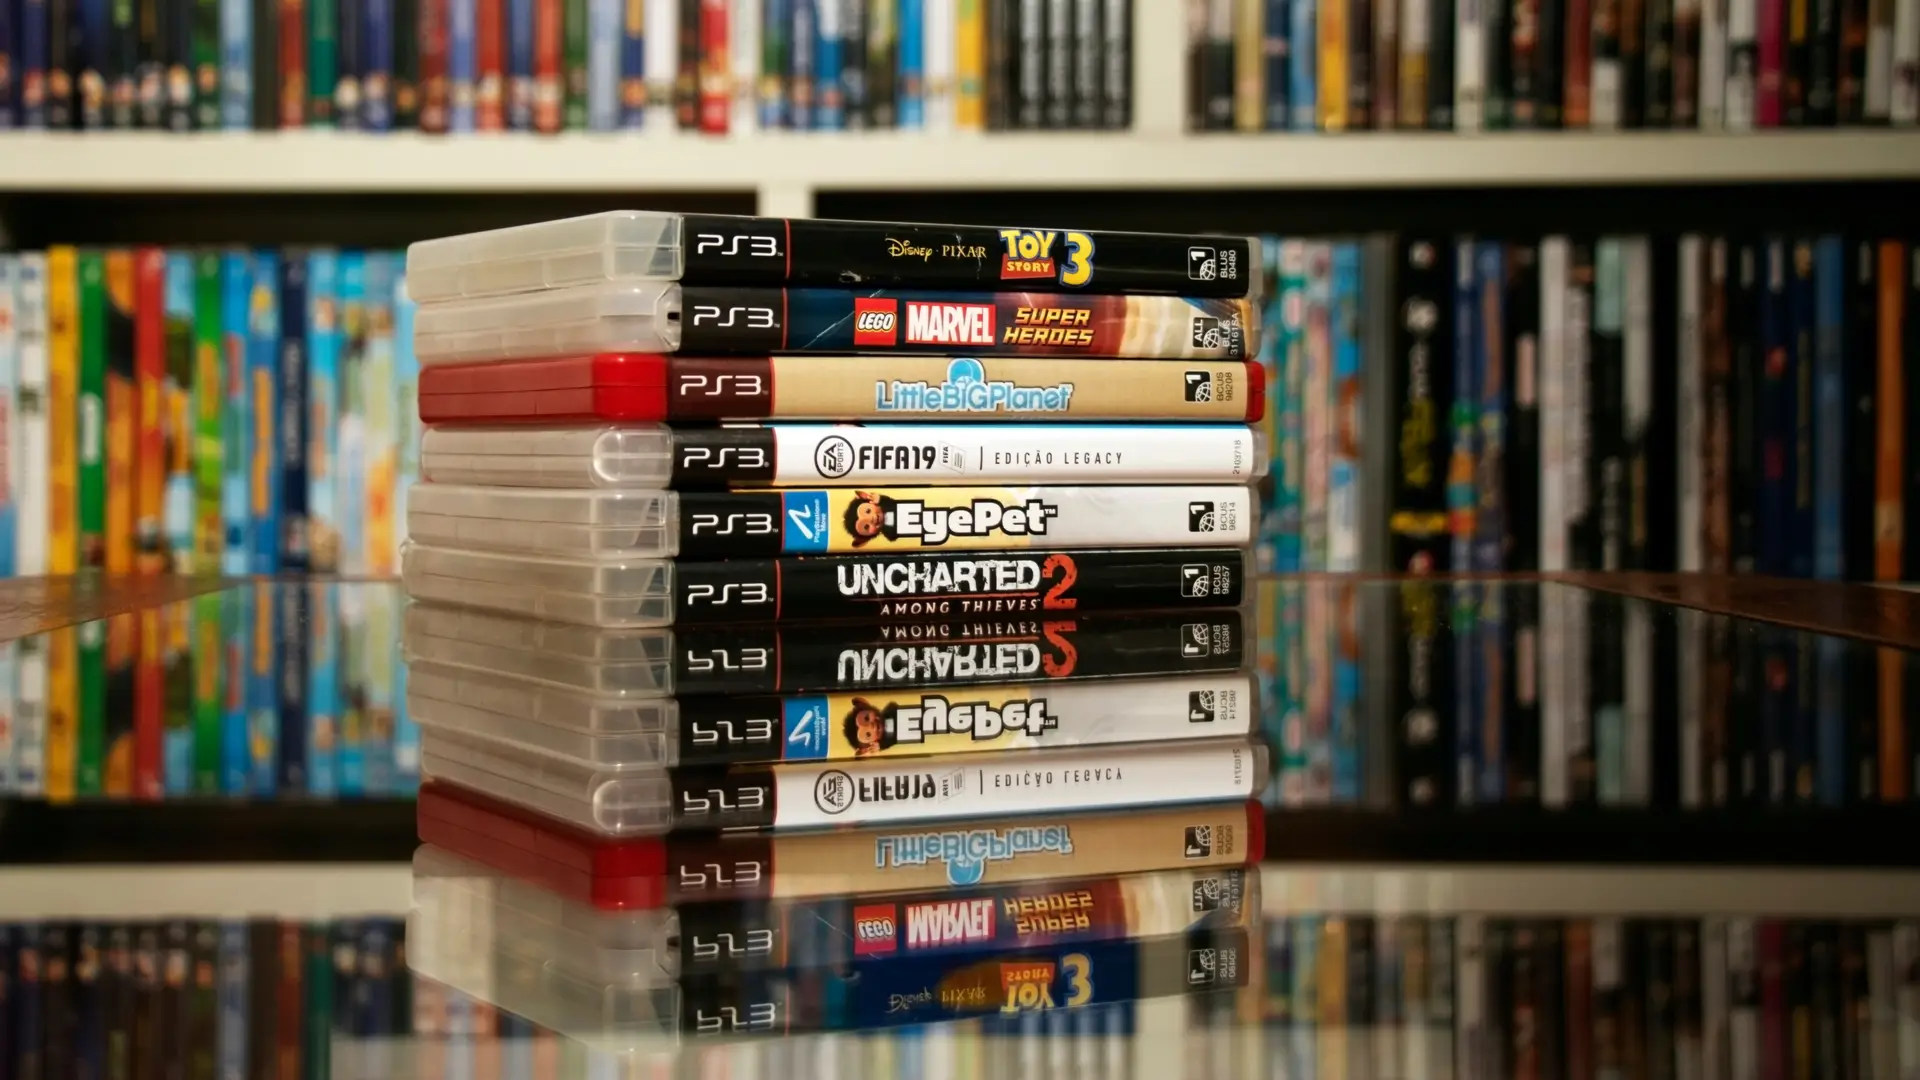 Diversos jogos de PS3 expostos sobre uma mesa de vidro.